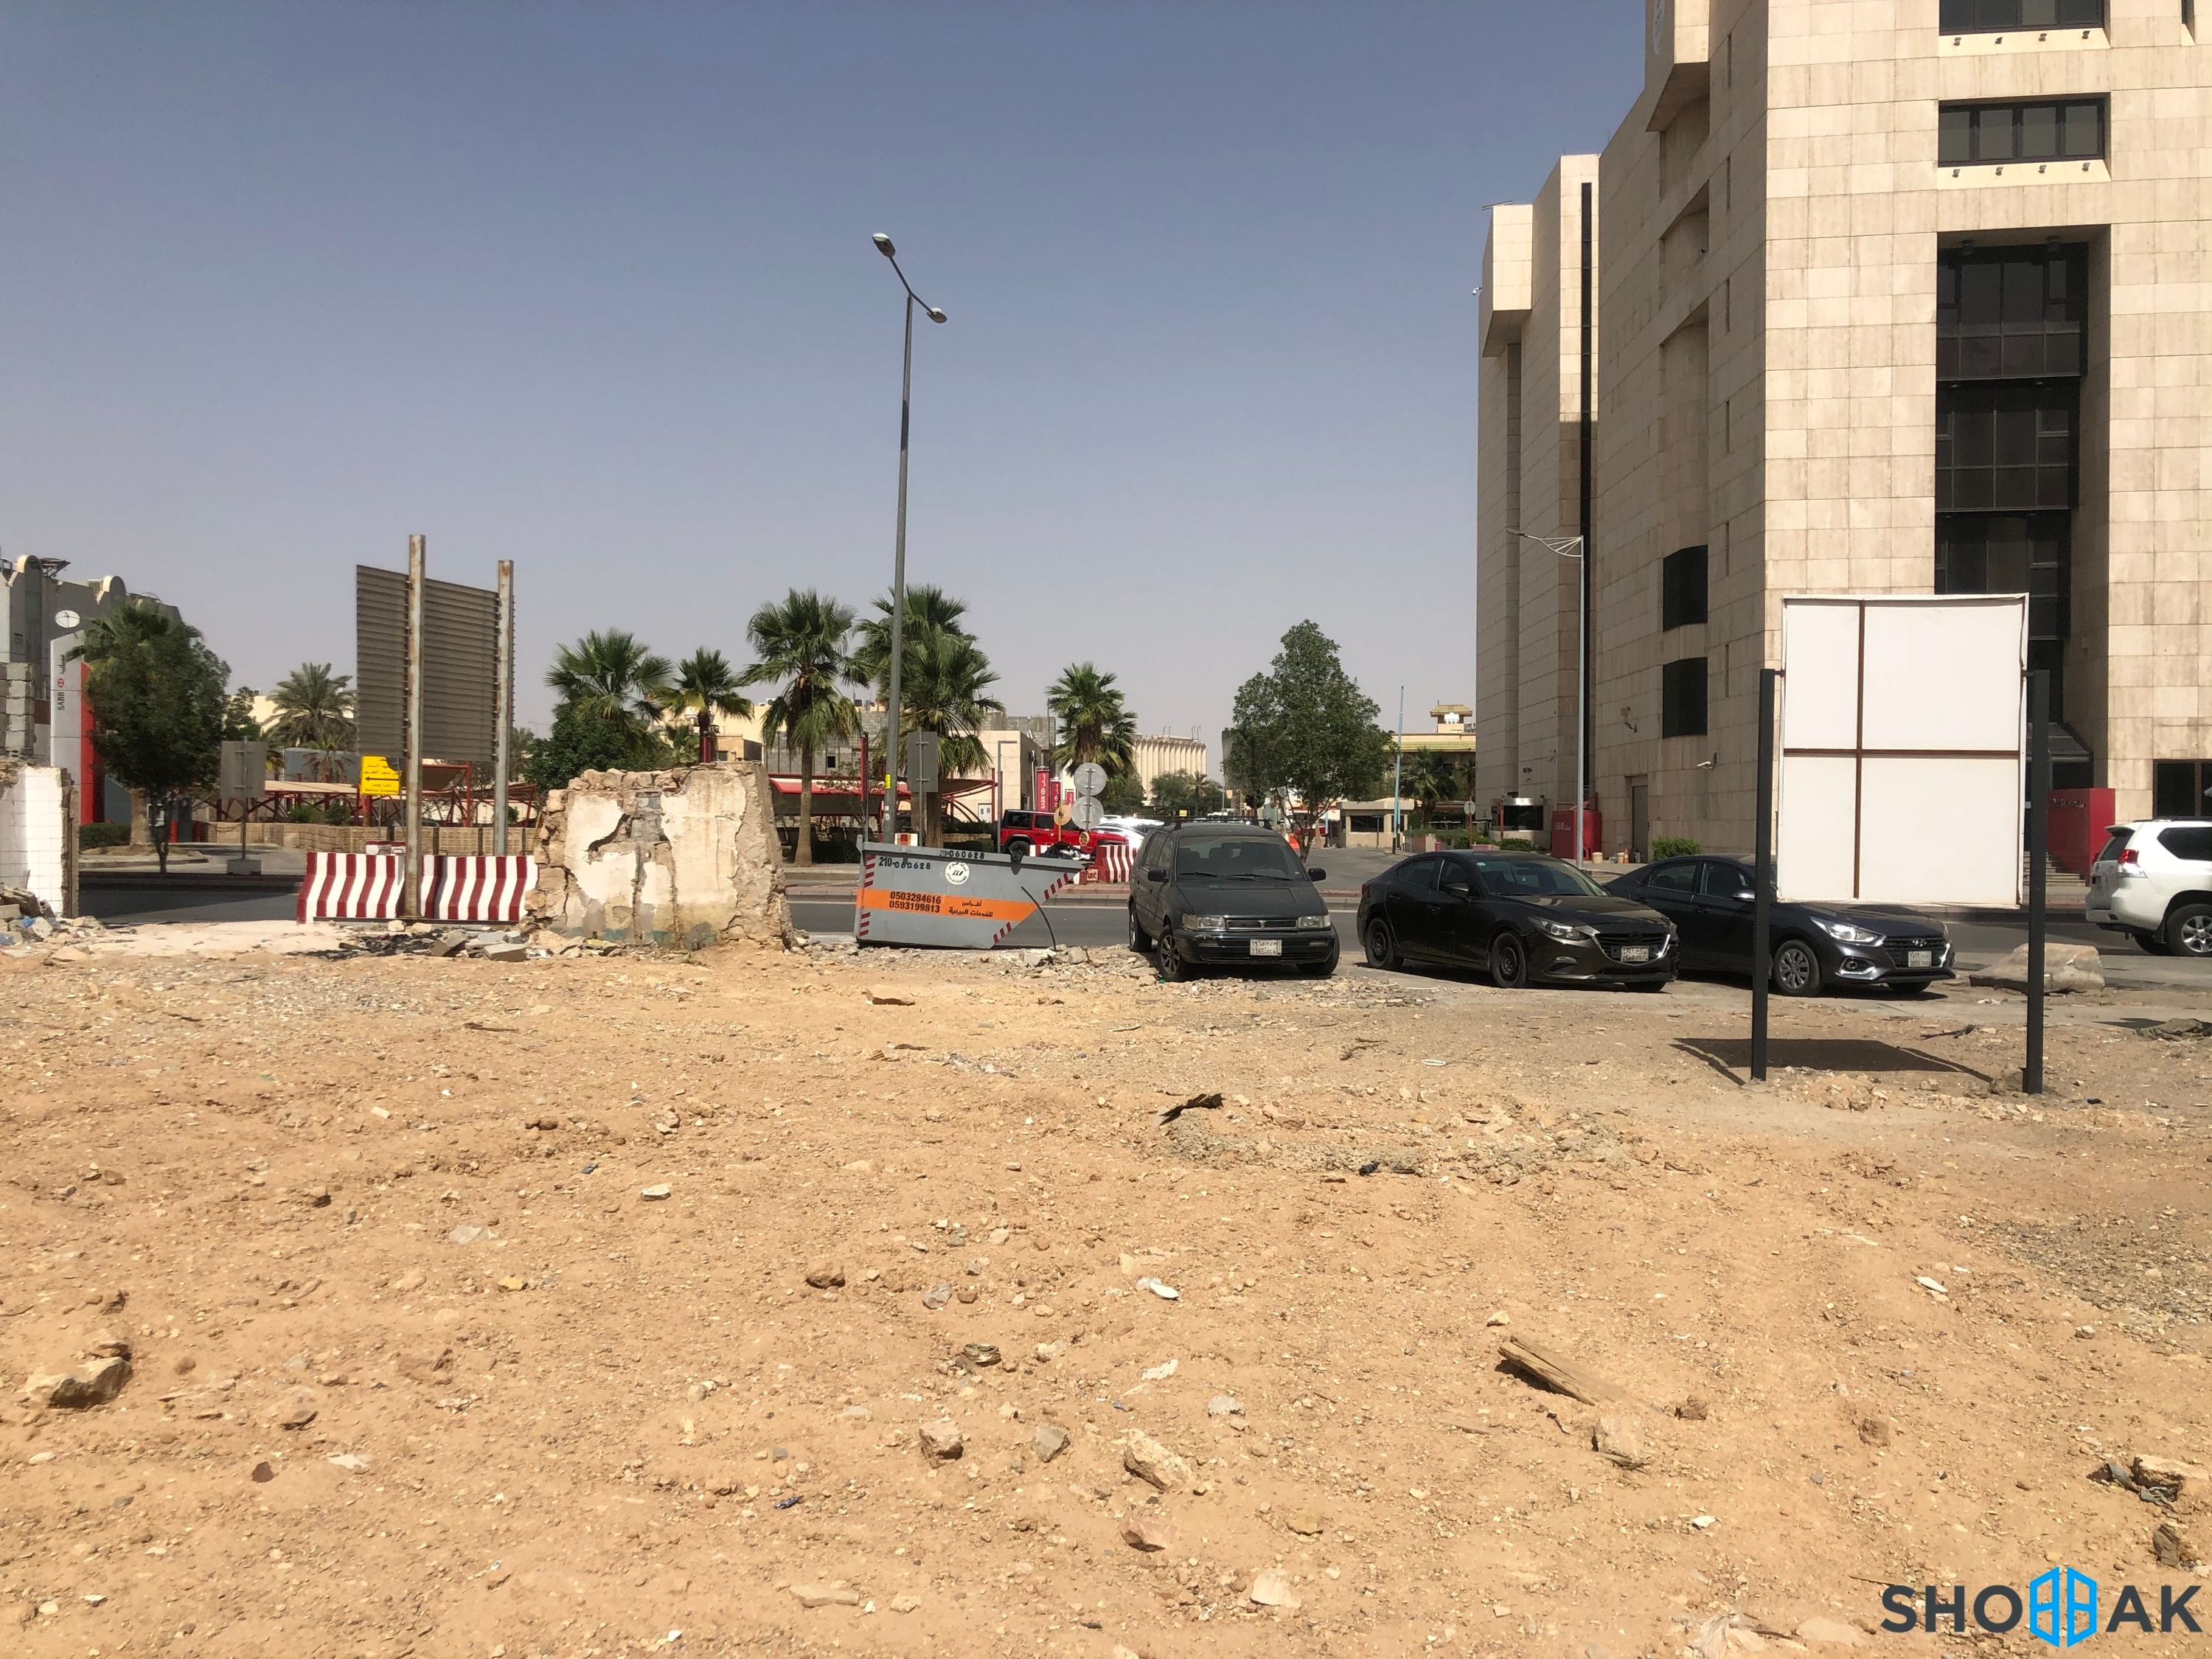 أرض للبيع - شارع الامير حيدر الثهابي - حي المربع شباك السعودية